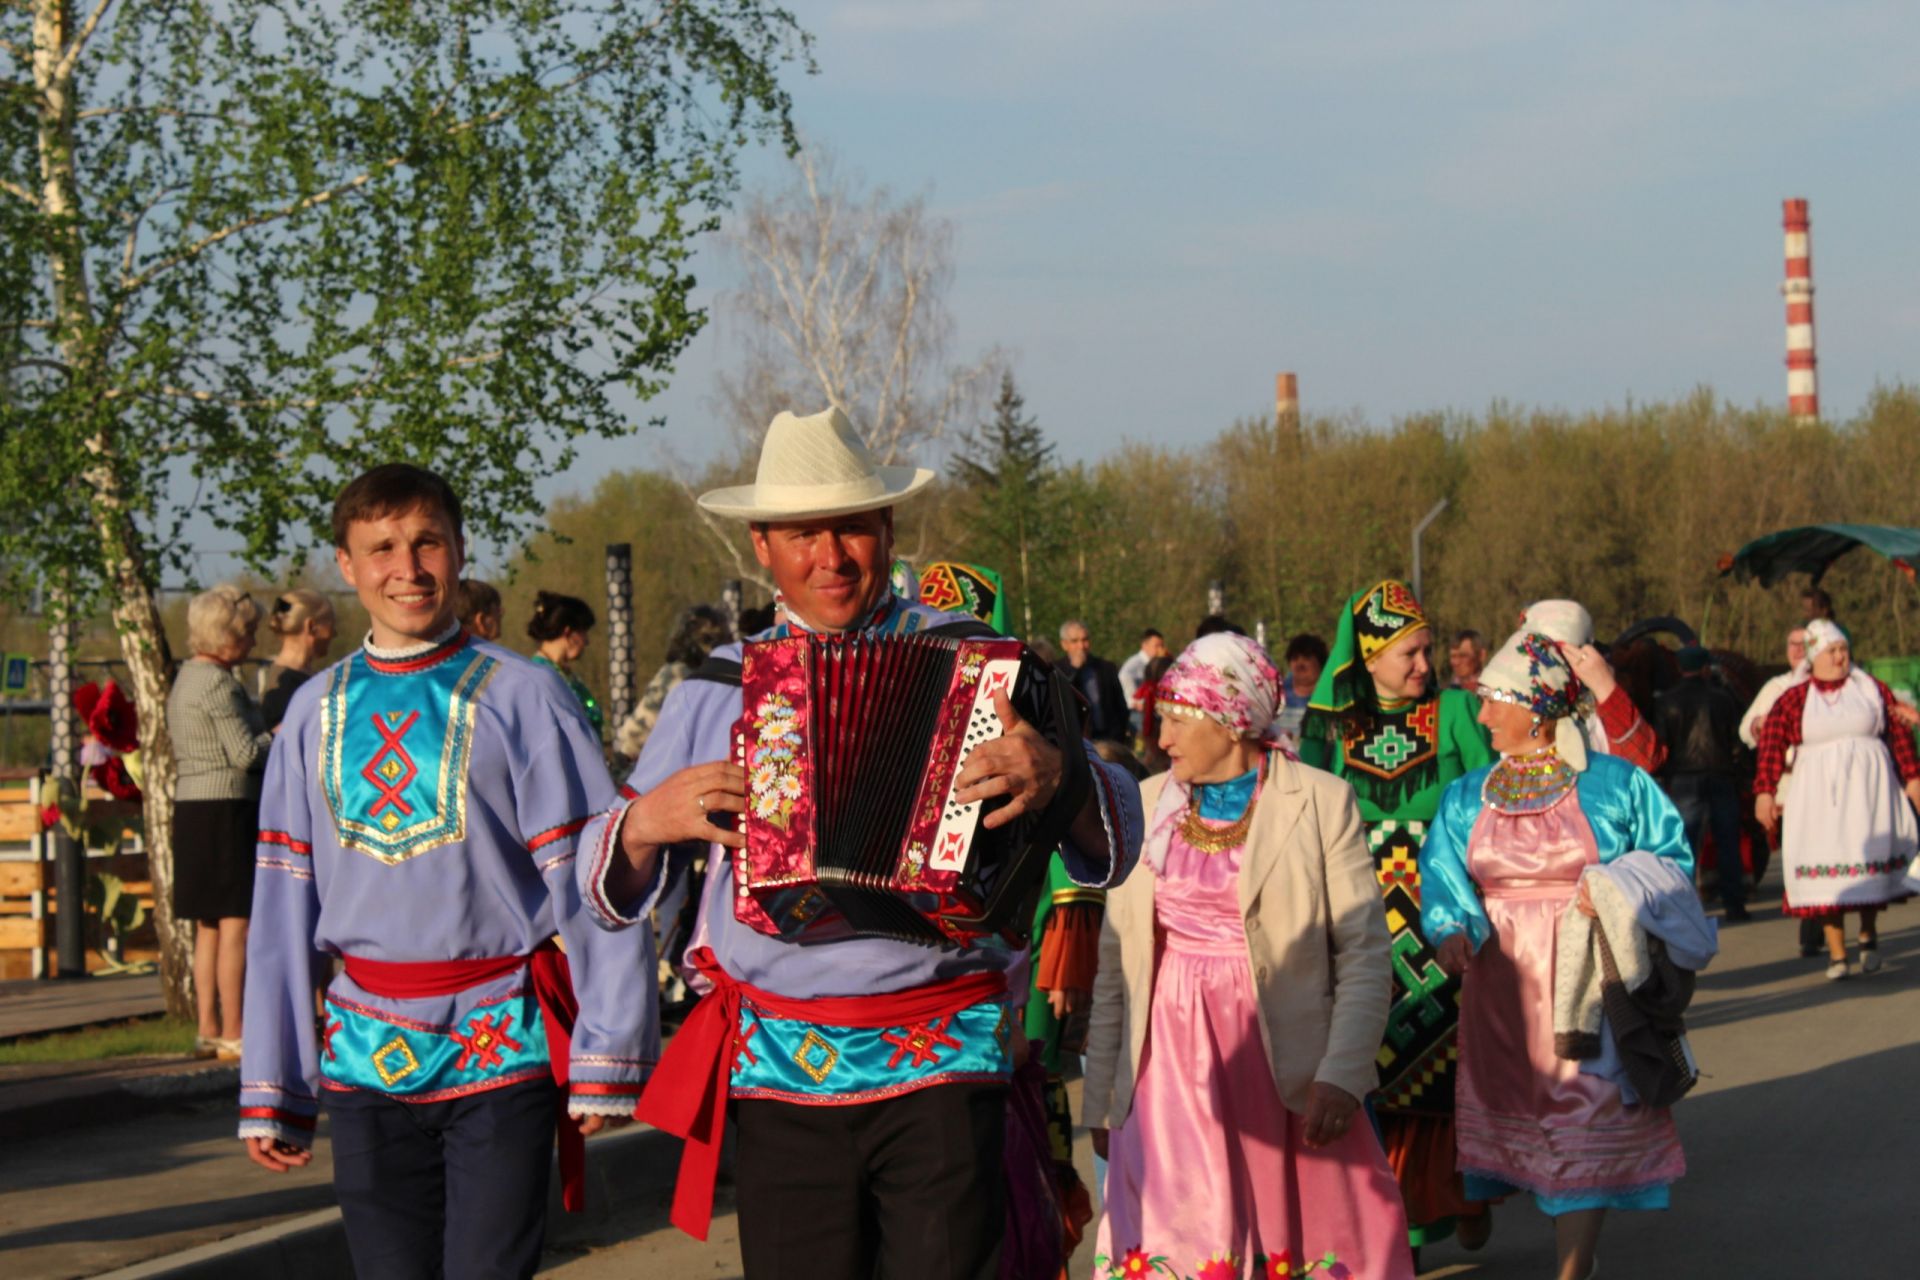 Душа поёт, гармонь играет": менделеевцы - участники парада национальных костюмов